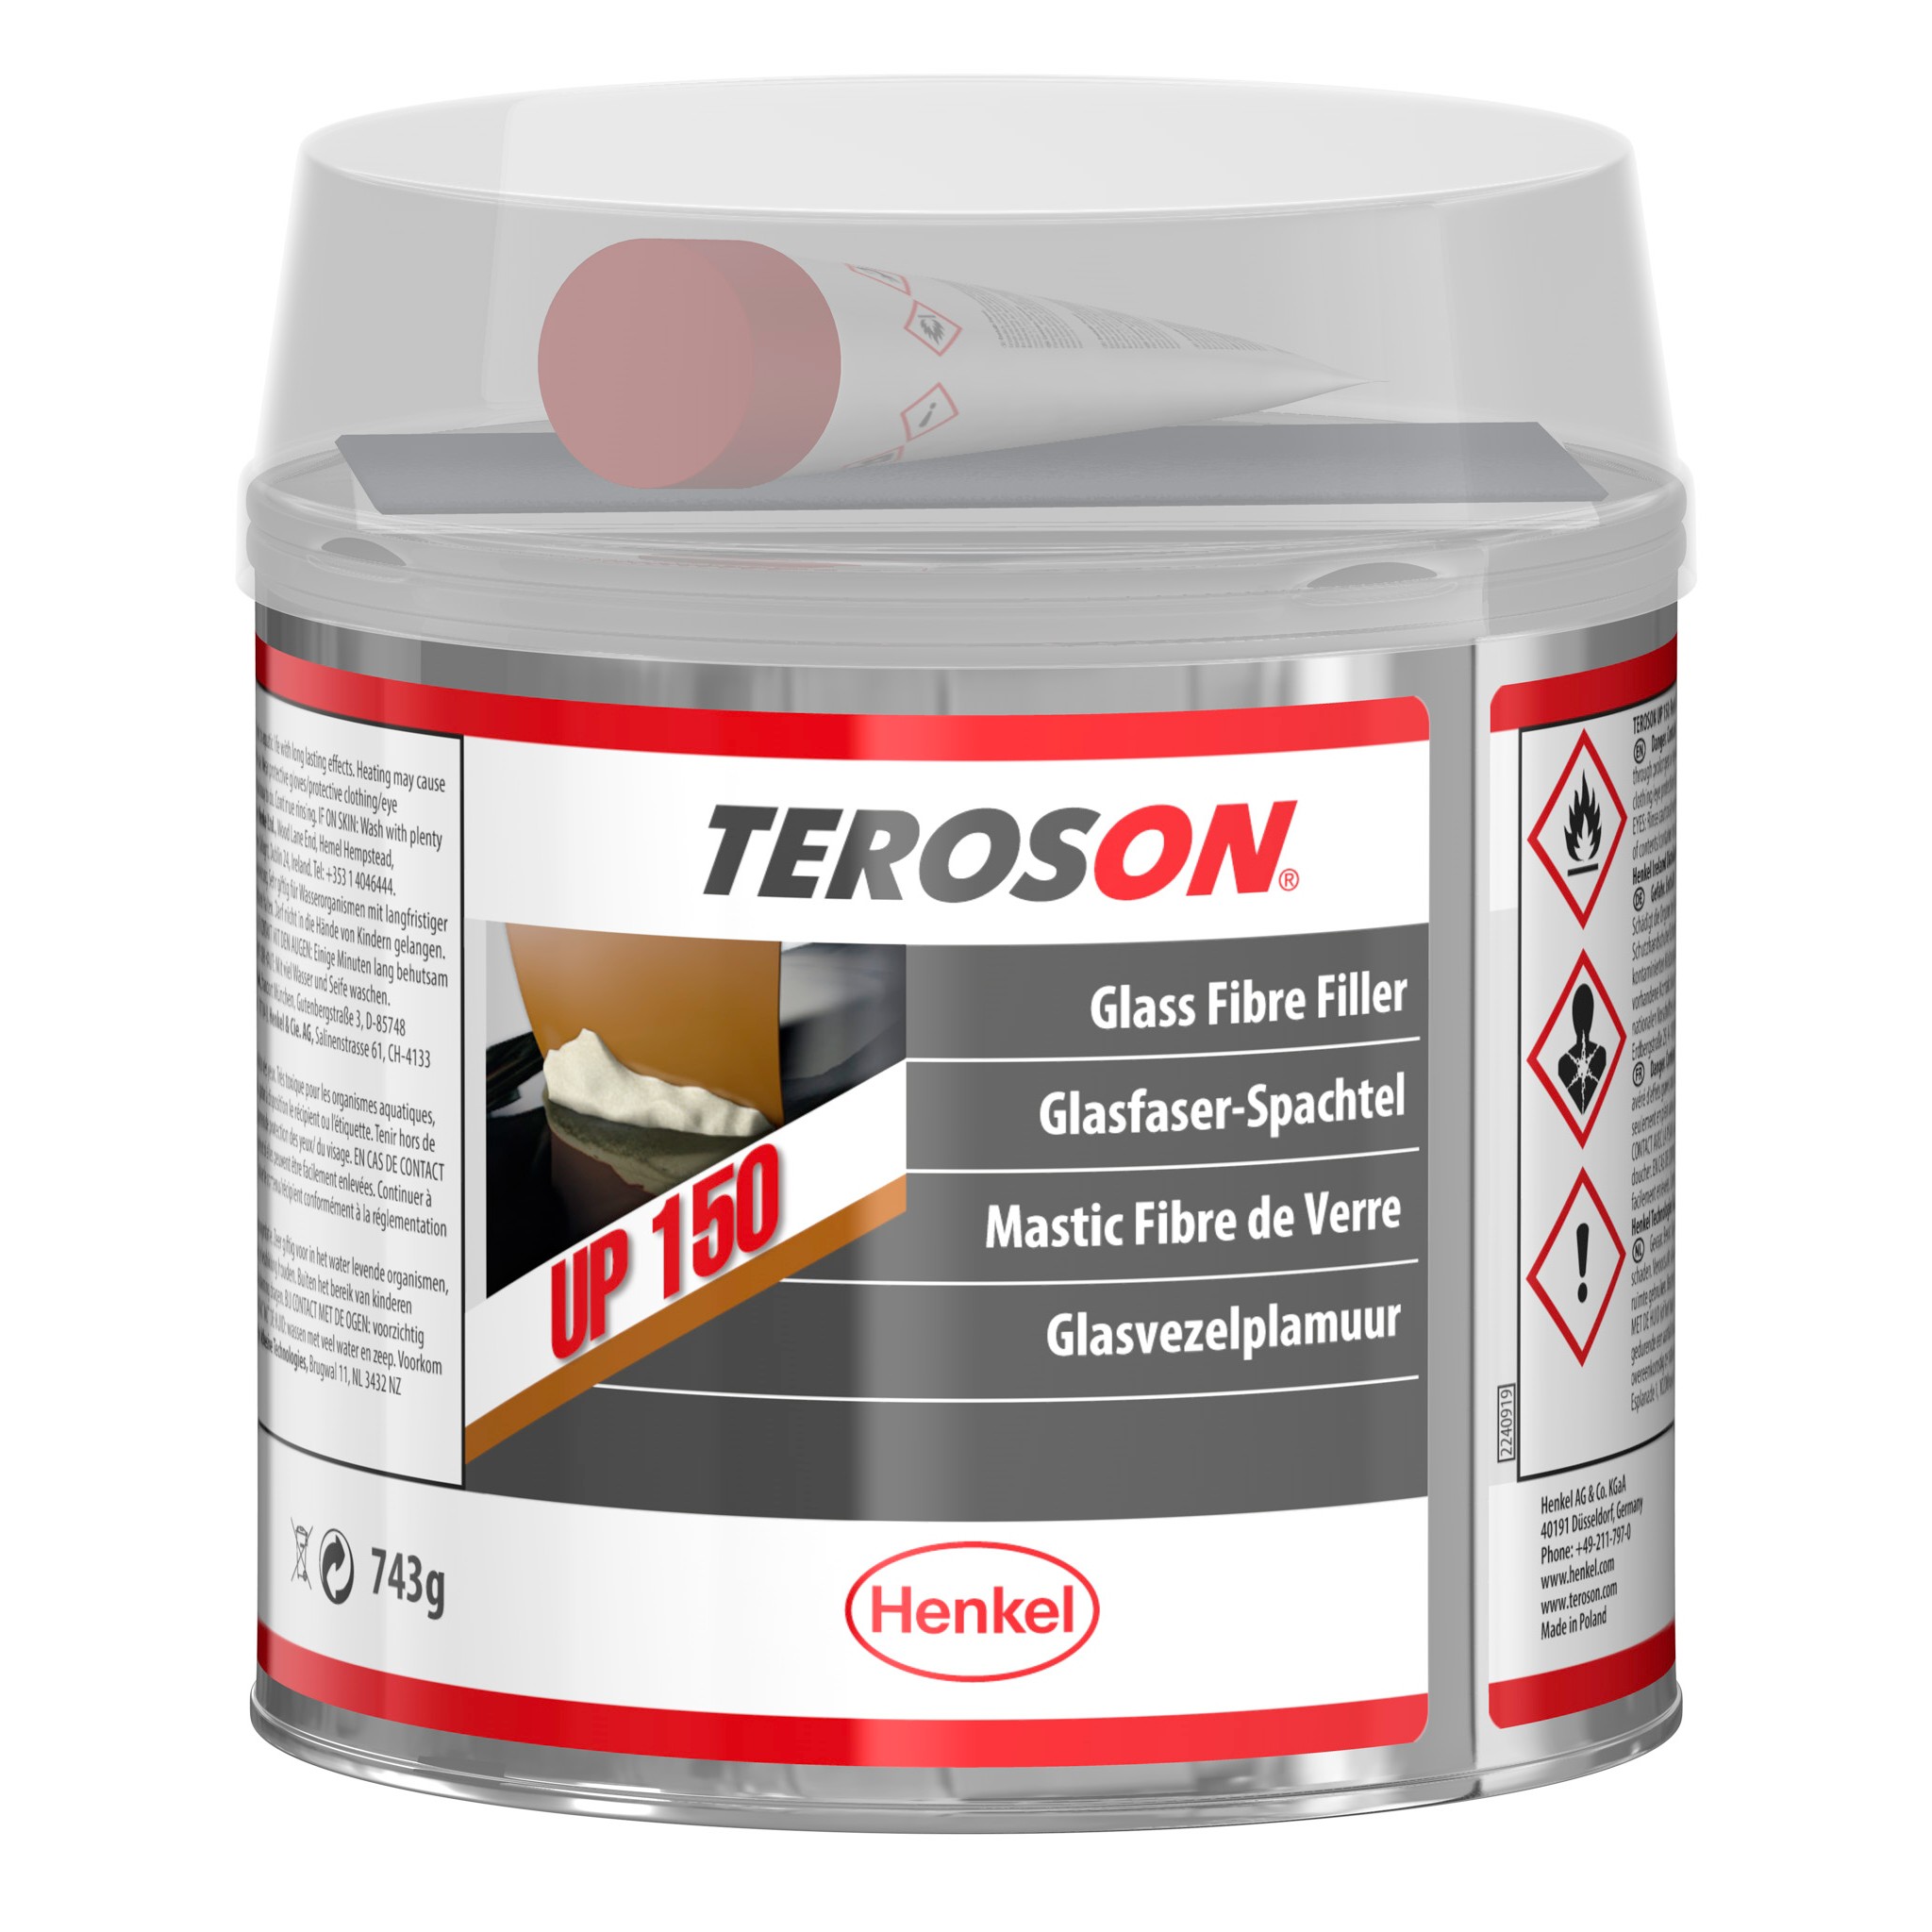 TEROSON 150 - 150ml (plastic primer) / Terokal 150